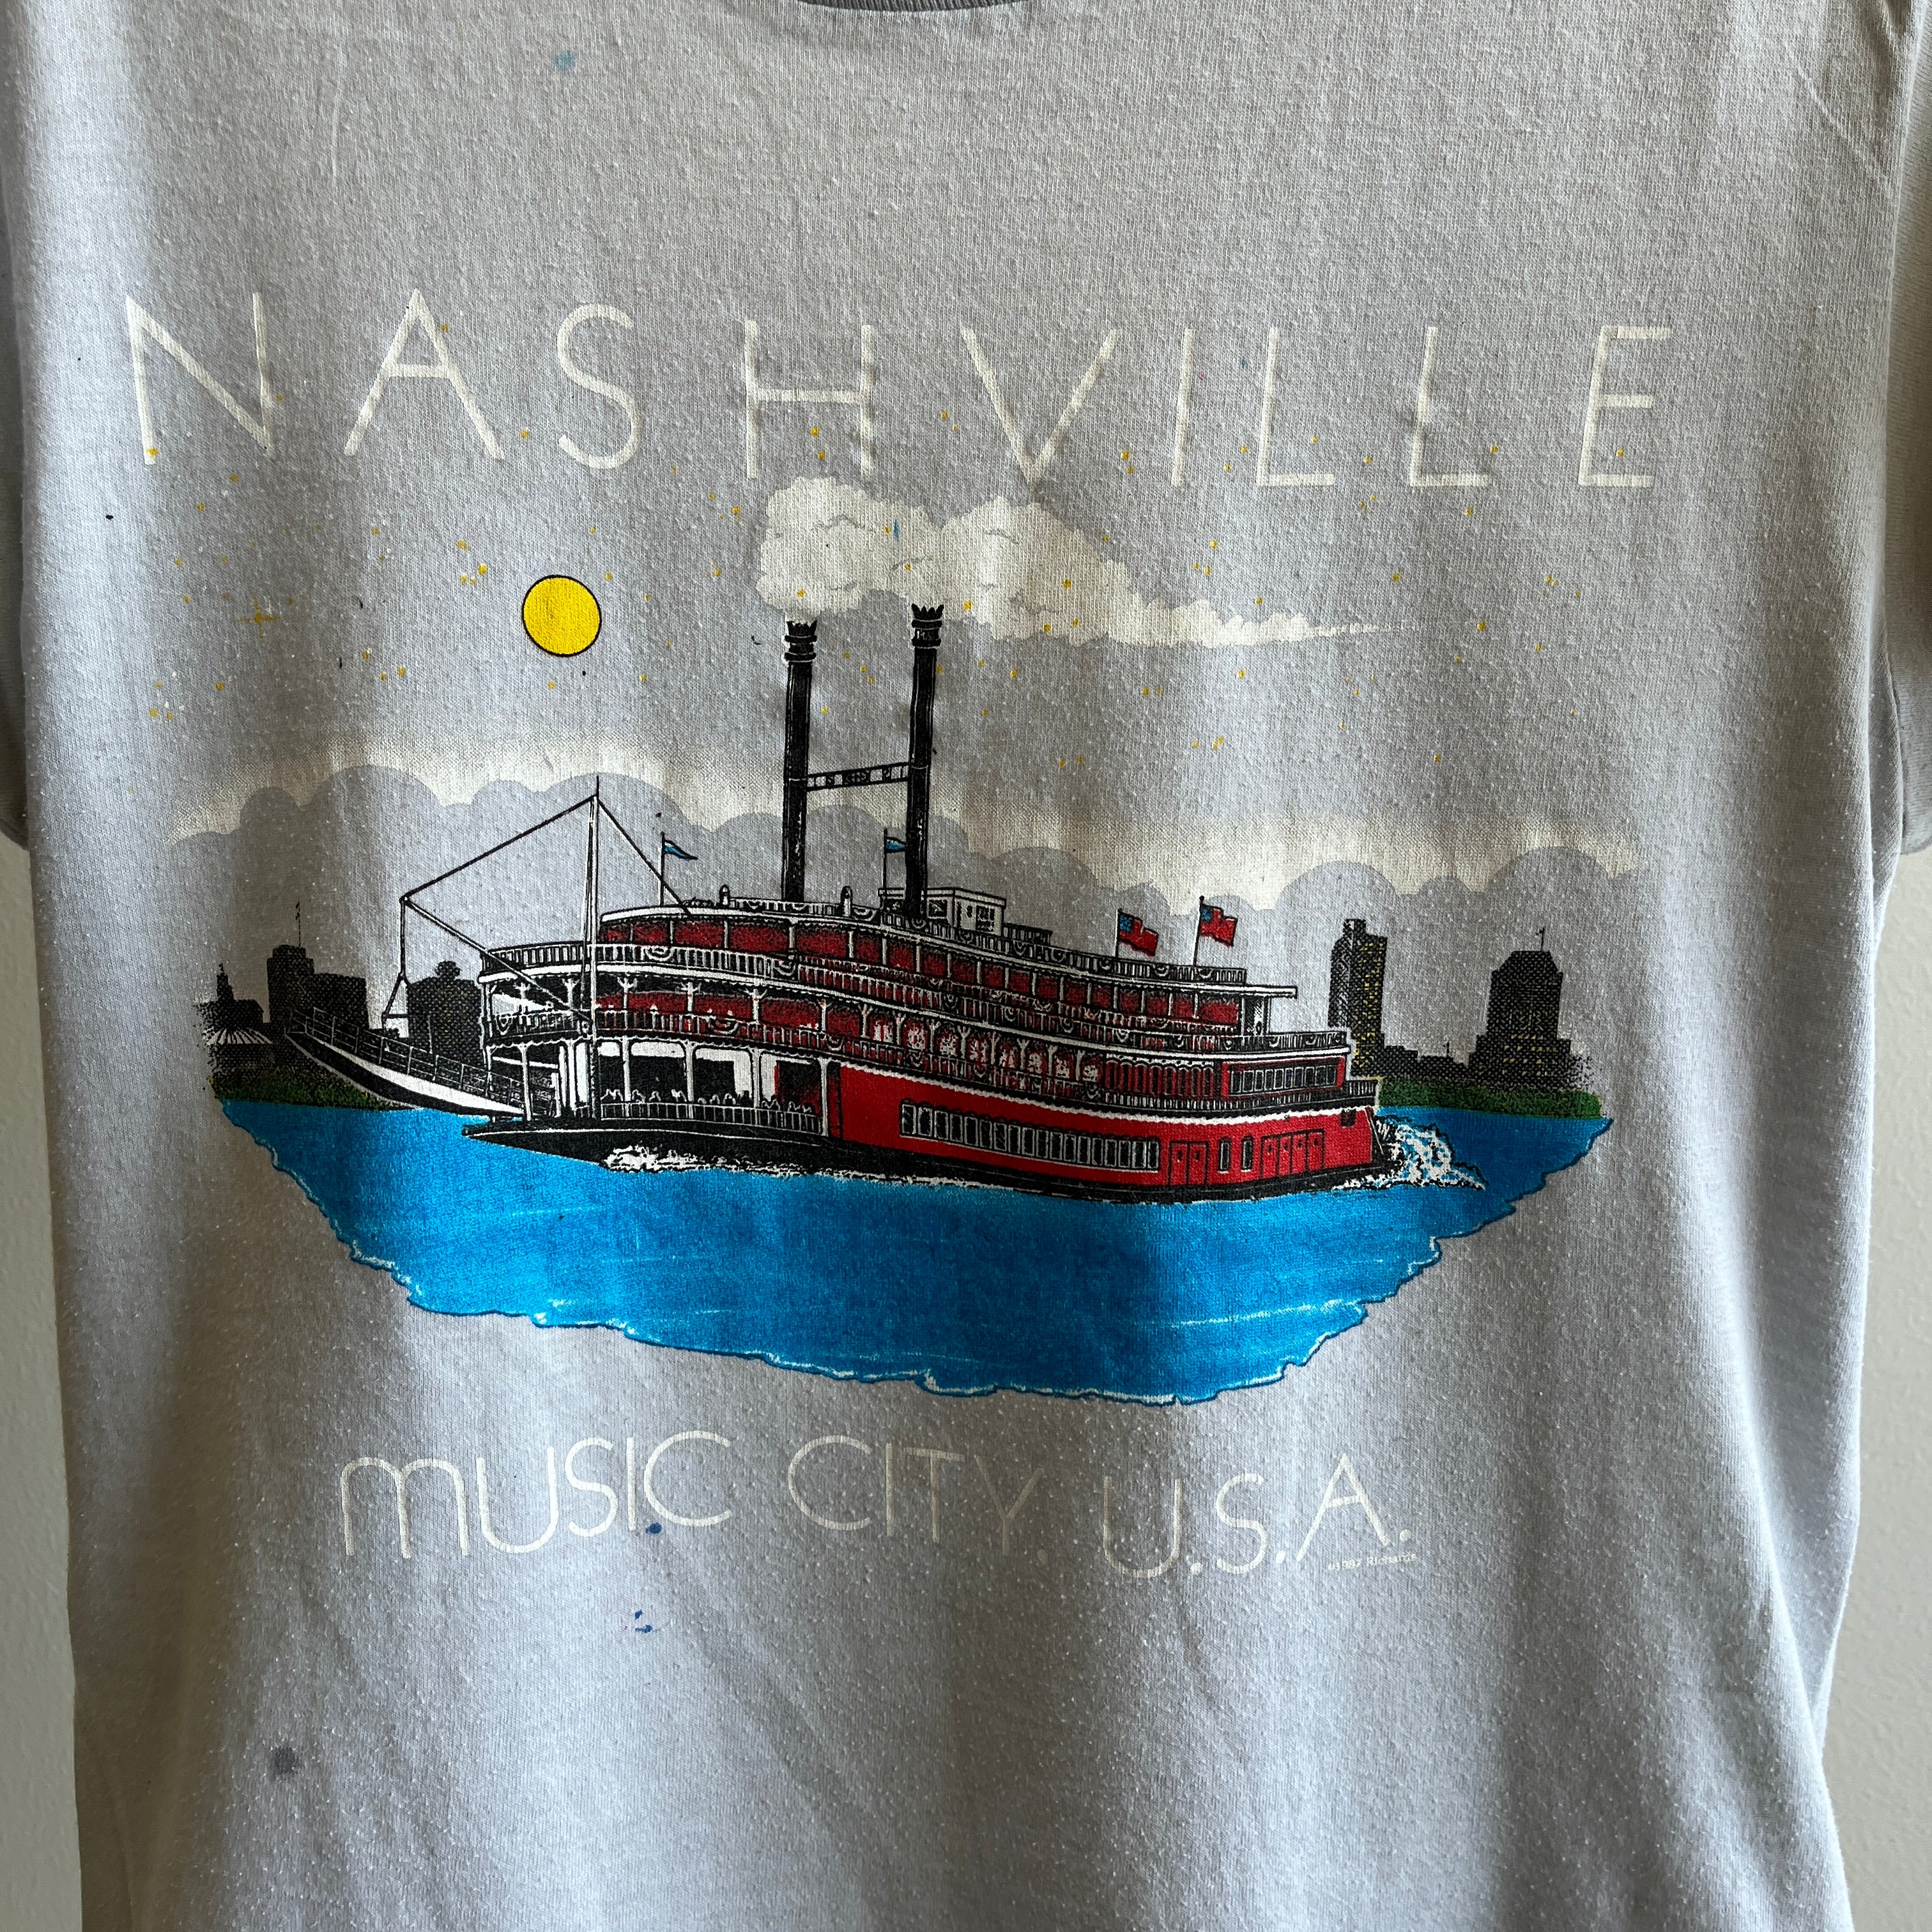 1987 Nashville Music City, États-Unis Super Stained Plus petite taille